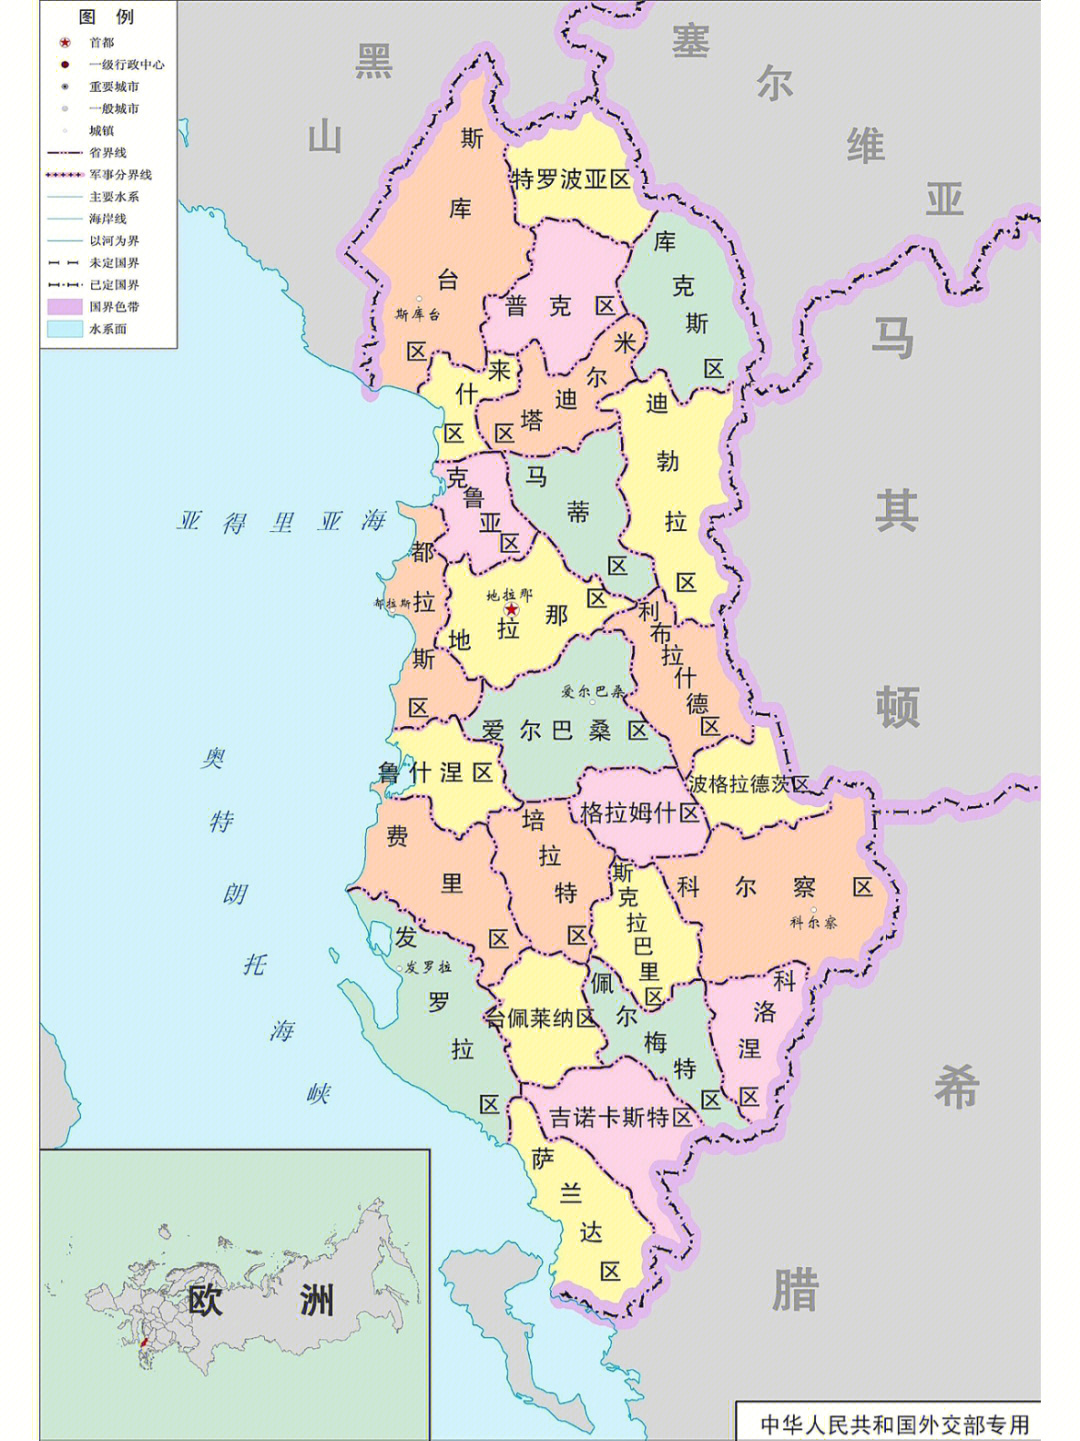 阿尔巴尼亚地理位置图片